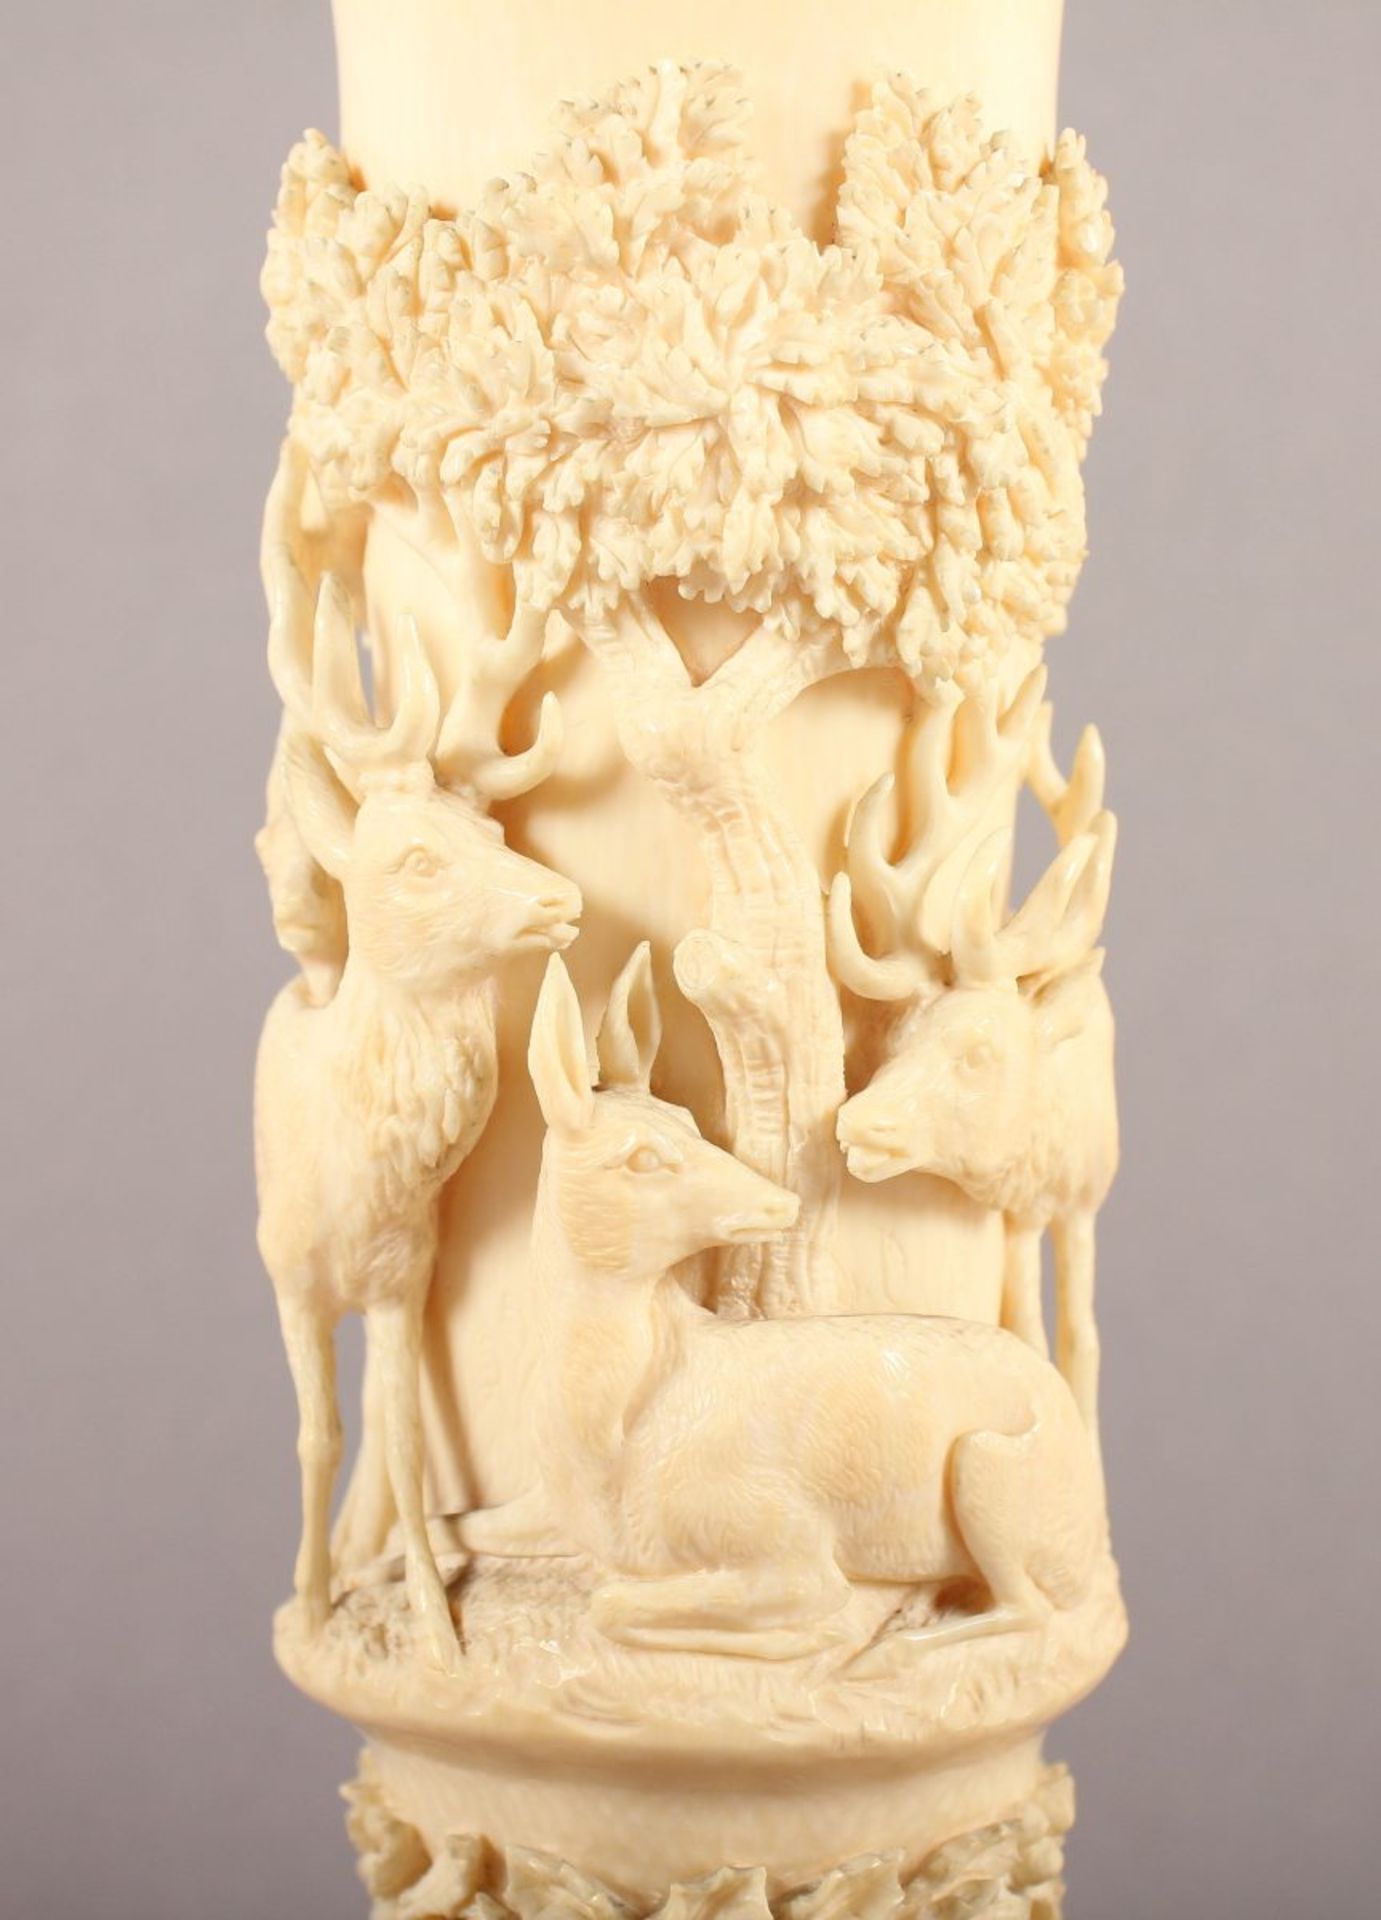 SELTENE VASE MIT JAGDMOTIVEN, Elfenbein, fein geschnitzt in Hochrelief, umlaufender Fries mit - Bild 6 aus 8